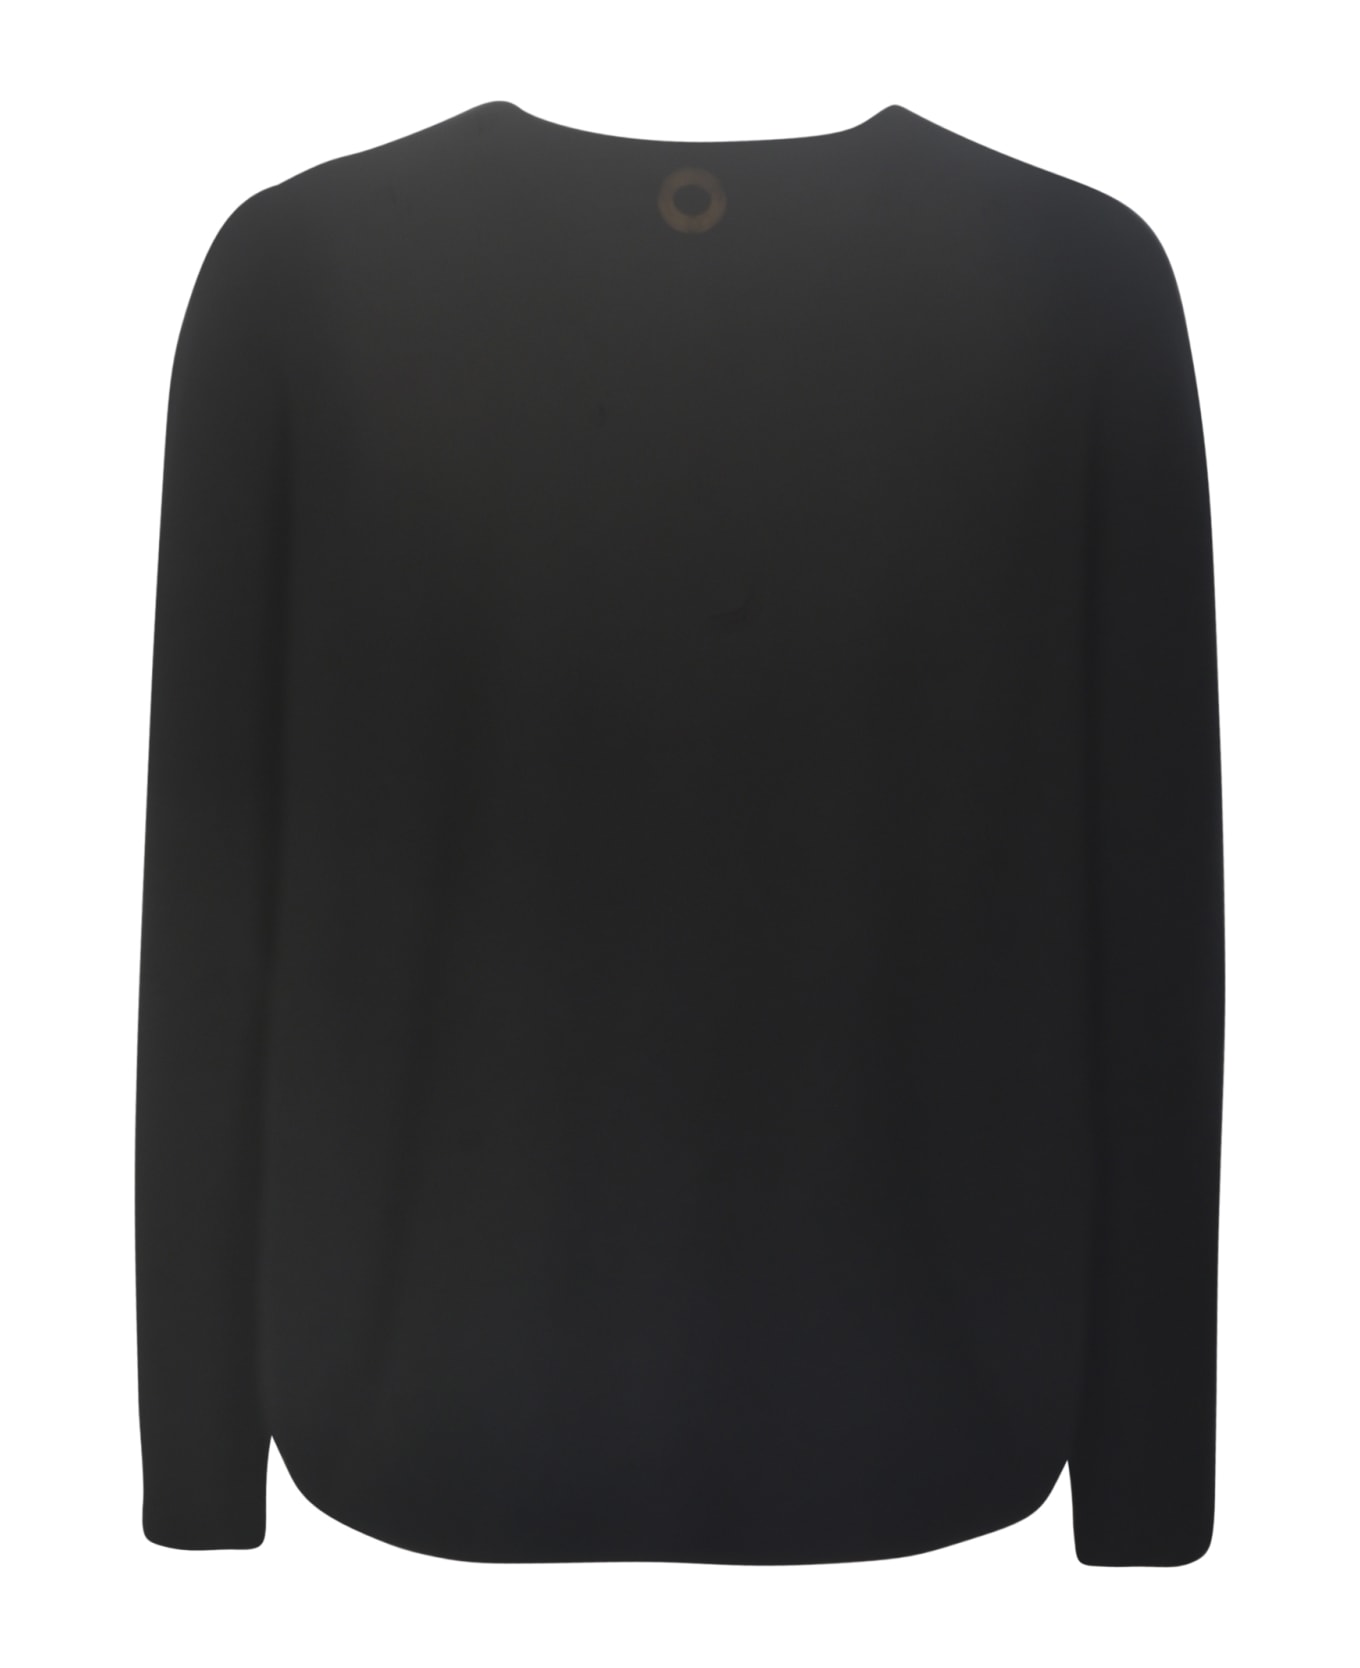 Oyuna Hidaka Sweater - Black ニットウェア